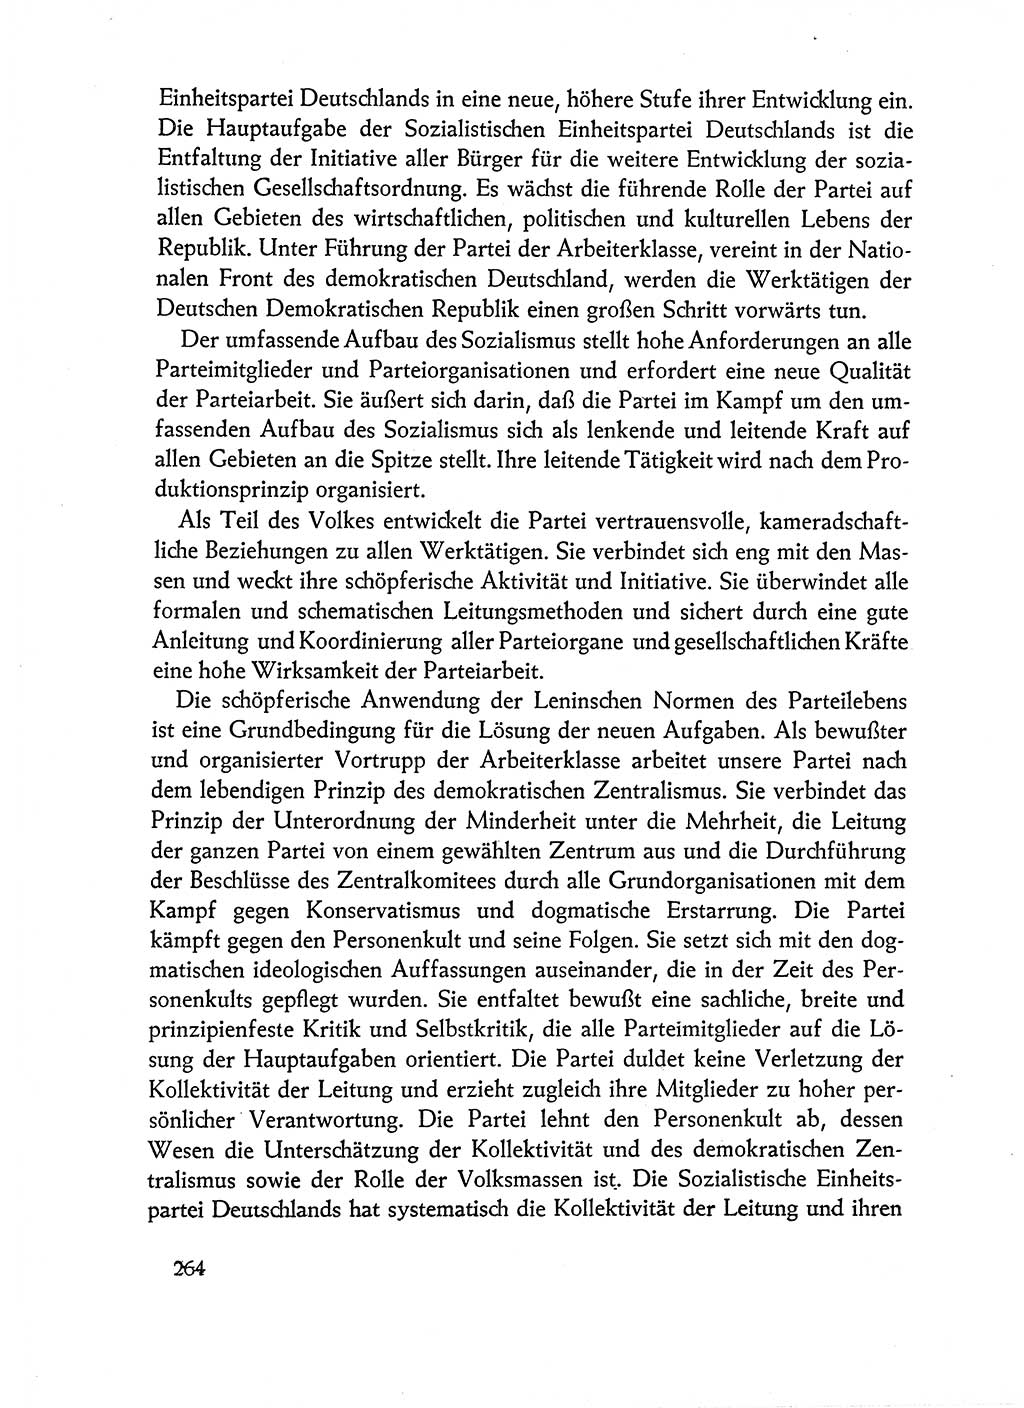 Dokumente der Sozialistischen Einheitspartei Deutschlands (SED) [Deutsche Demokratische Republik (DDR)] 1962-1963, Seite 264 (Dok. SED DDR 1962-1963, S. 264)